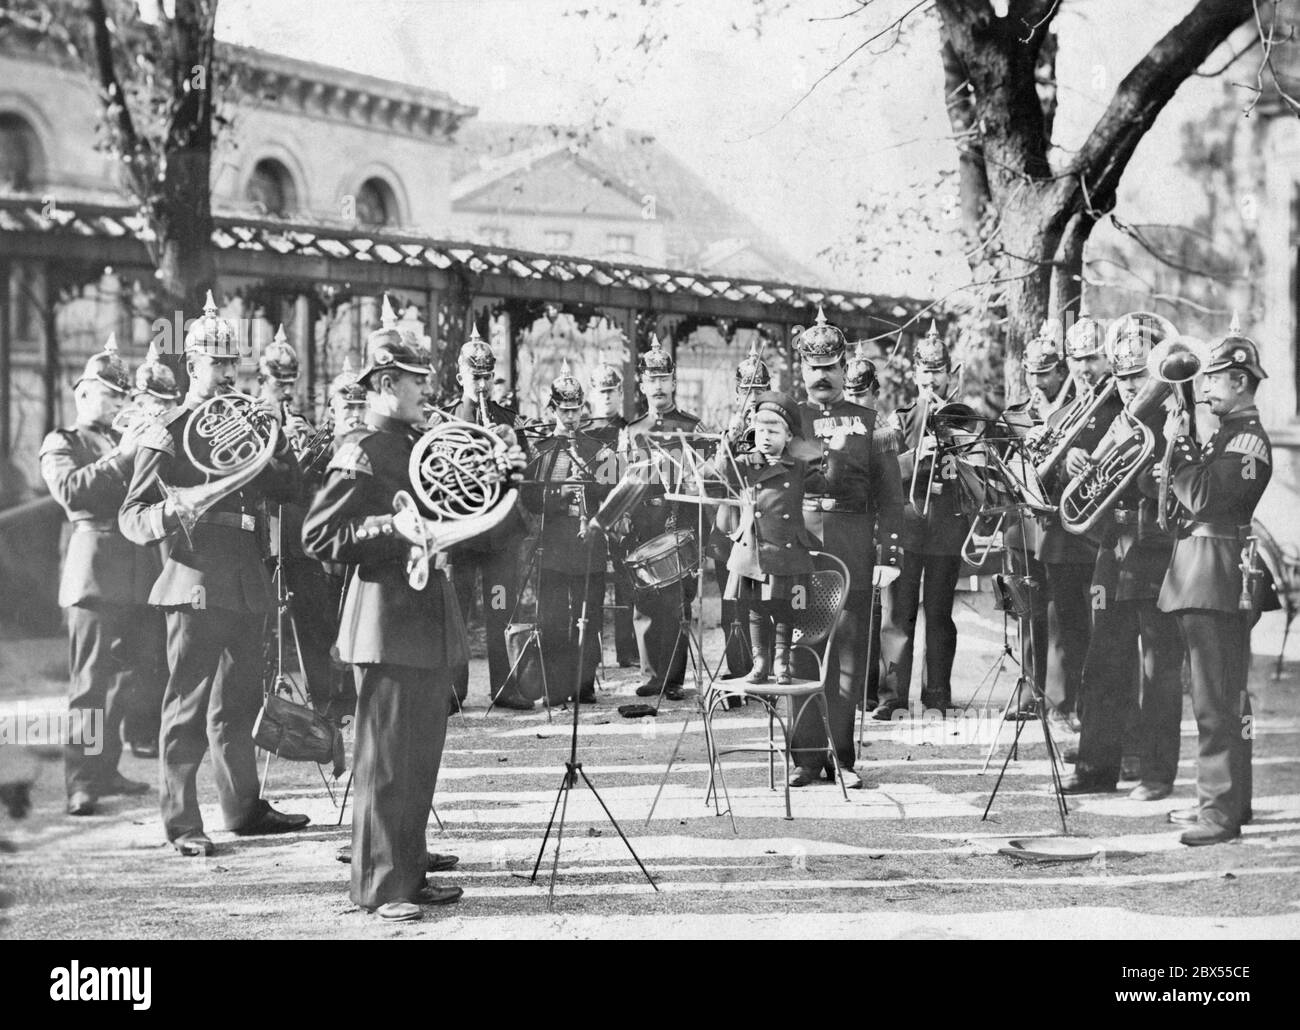 Charles Edward, Herzog von Sachsen-Coburg und Gotha steht im Matrosenanzug auf einem Gartenstuhl und dirigiert die Musikkapelle der herzoglichen Truppen. Stockfoto